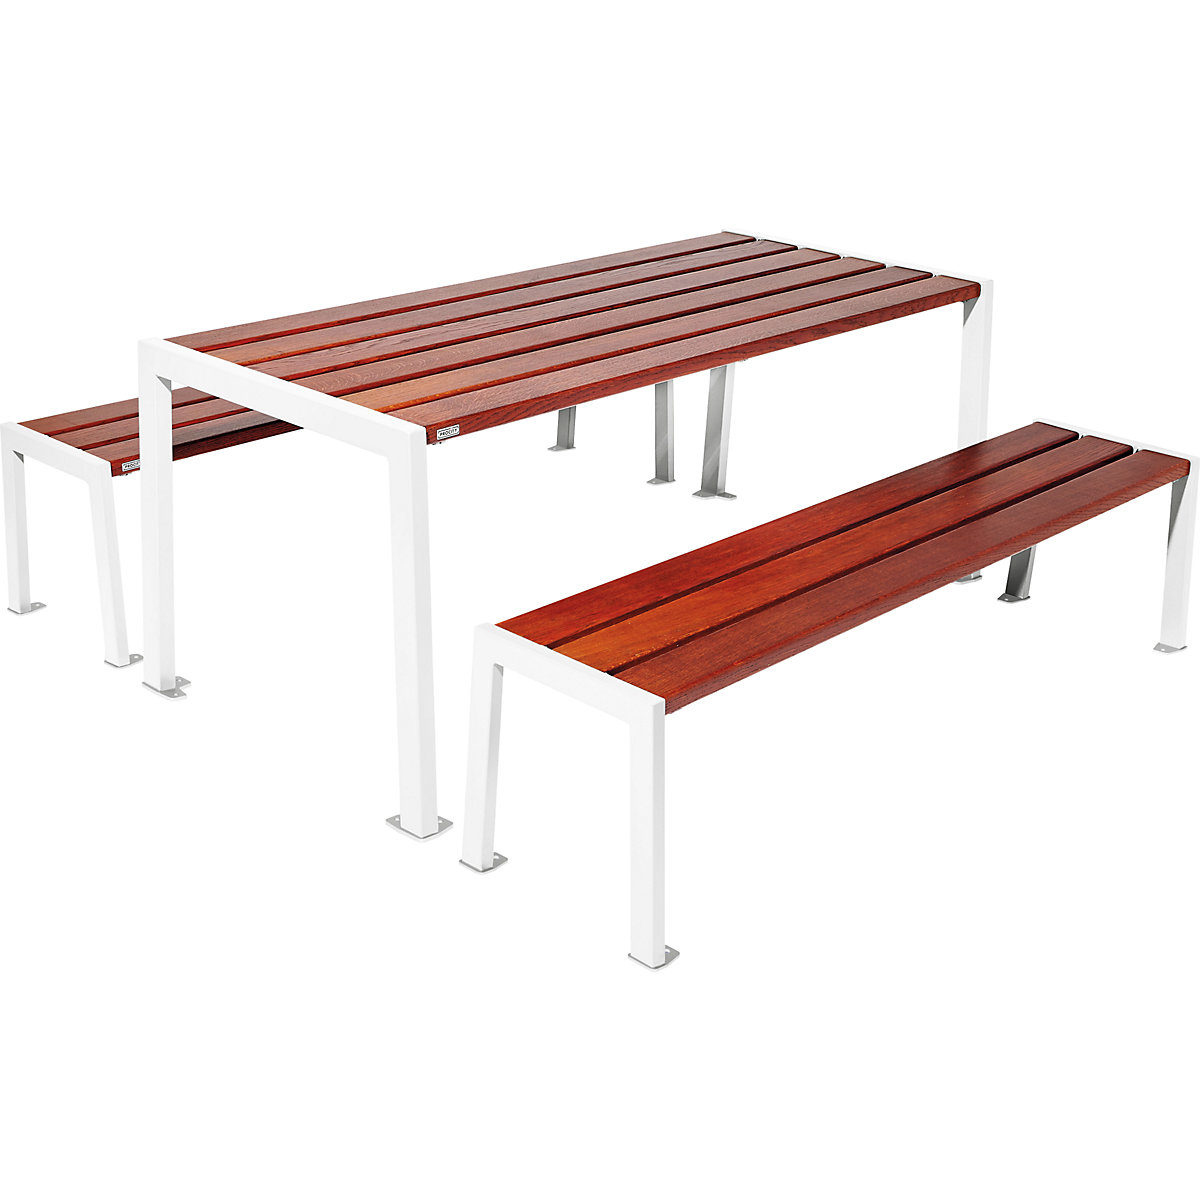 Garnitura mize in klopi Silaos® – PROCITY, dolžina 1800 mm, bele barve / mahagoni-7